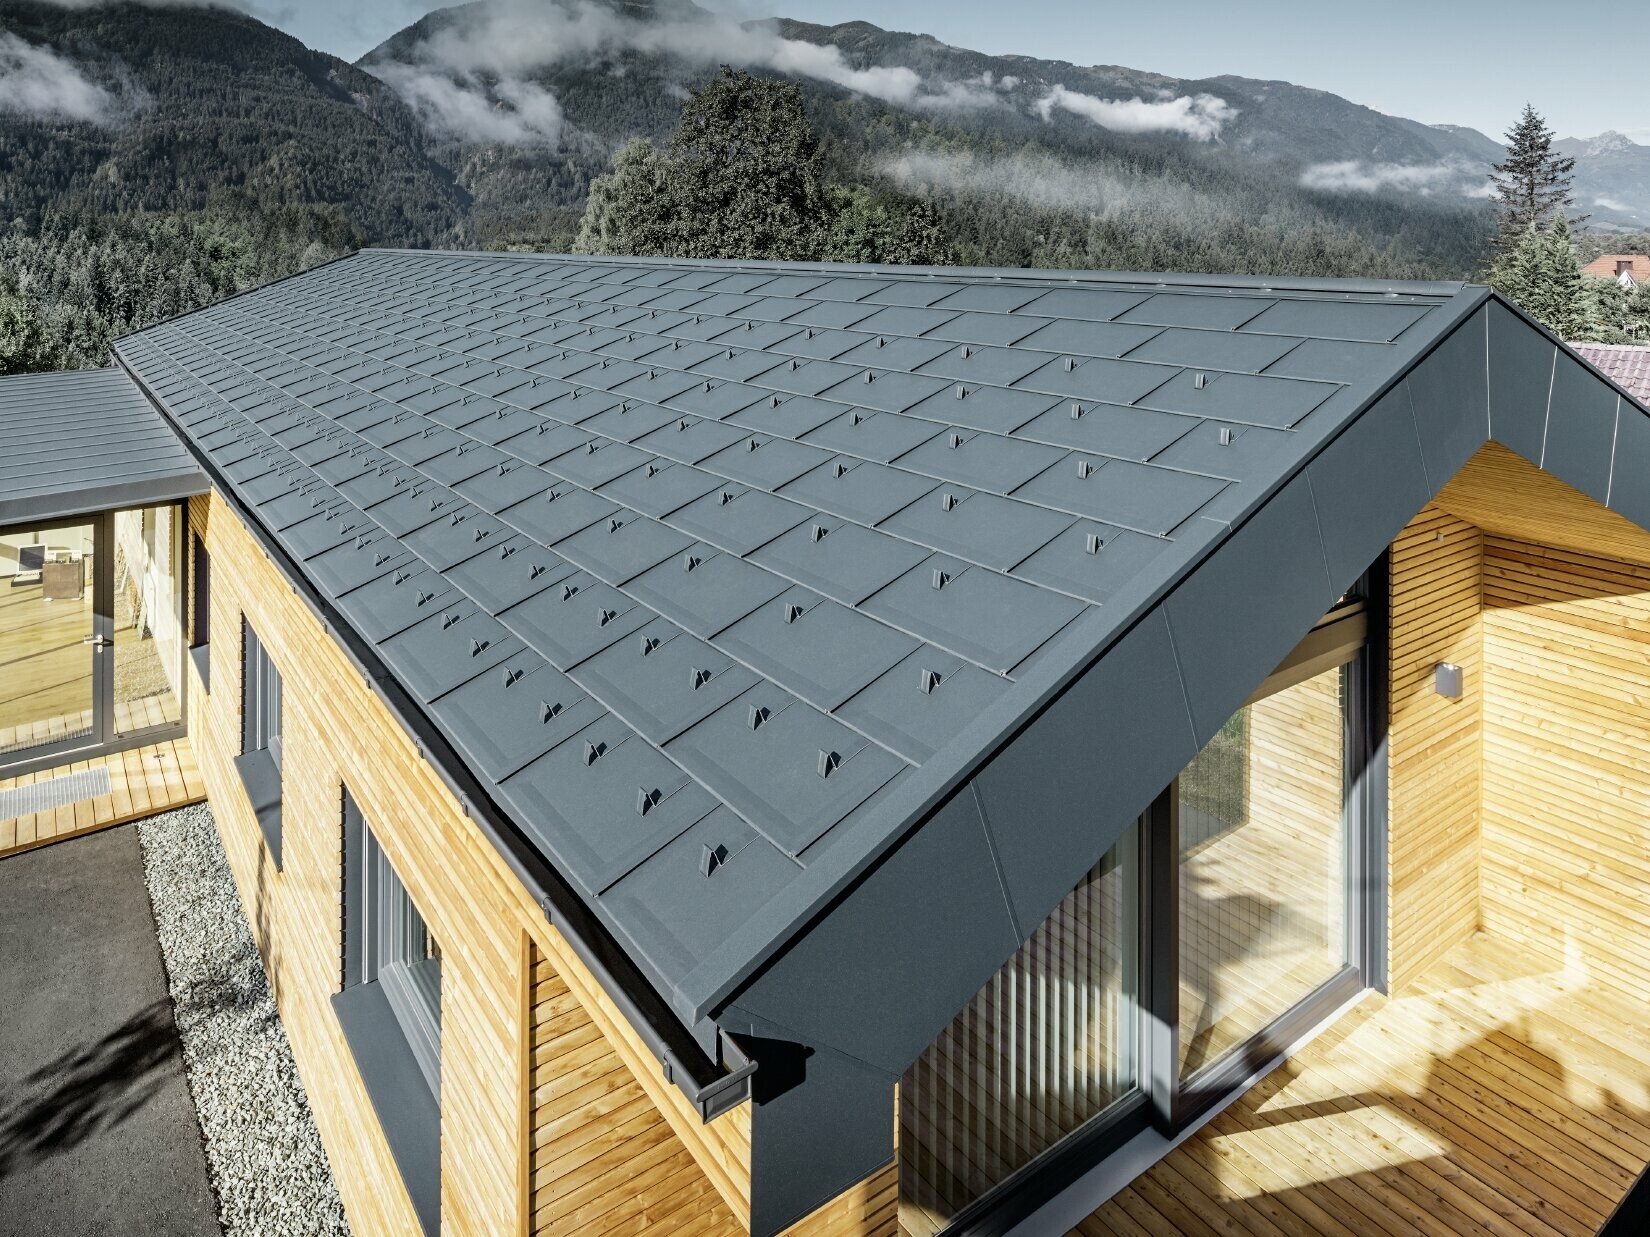 Neues Bürogebäude von Holzbau Faltheiner mit Lärchenholzfassade, großzügigen Fensterflächen und einem PREFA Dach in Anthrazit.